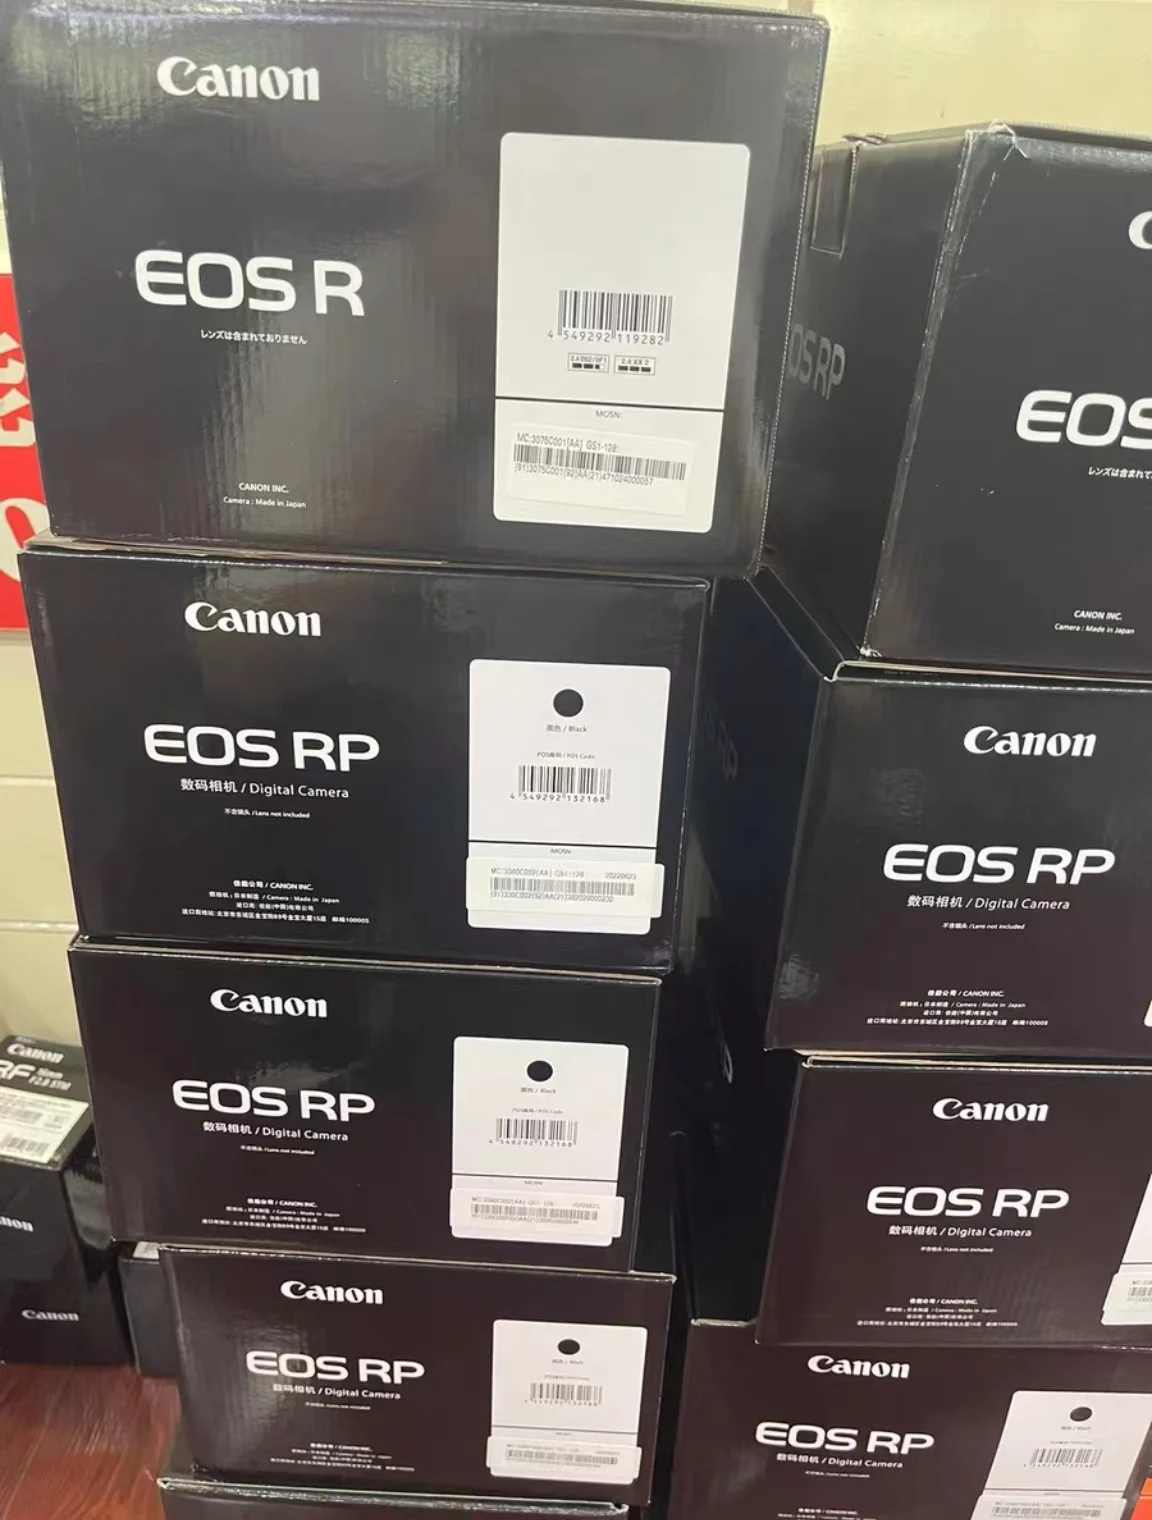 Цена по цена на производителя Can-on E-O-S RP camera полнокадровая 26,2-милионна беззеркальная камера поддържа полнопиксельную двухъядерную CMOS-камера автофокус